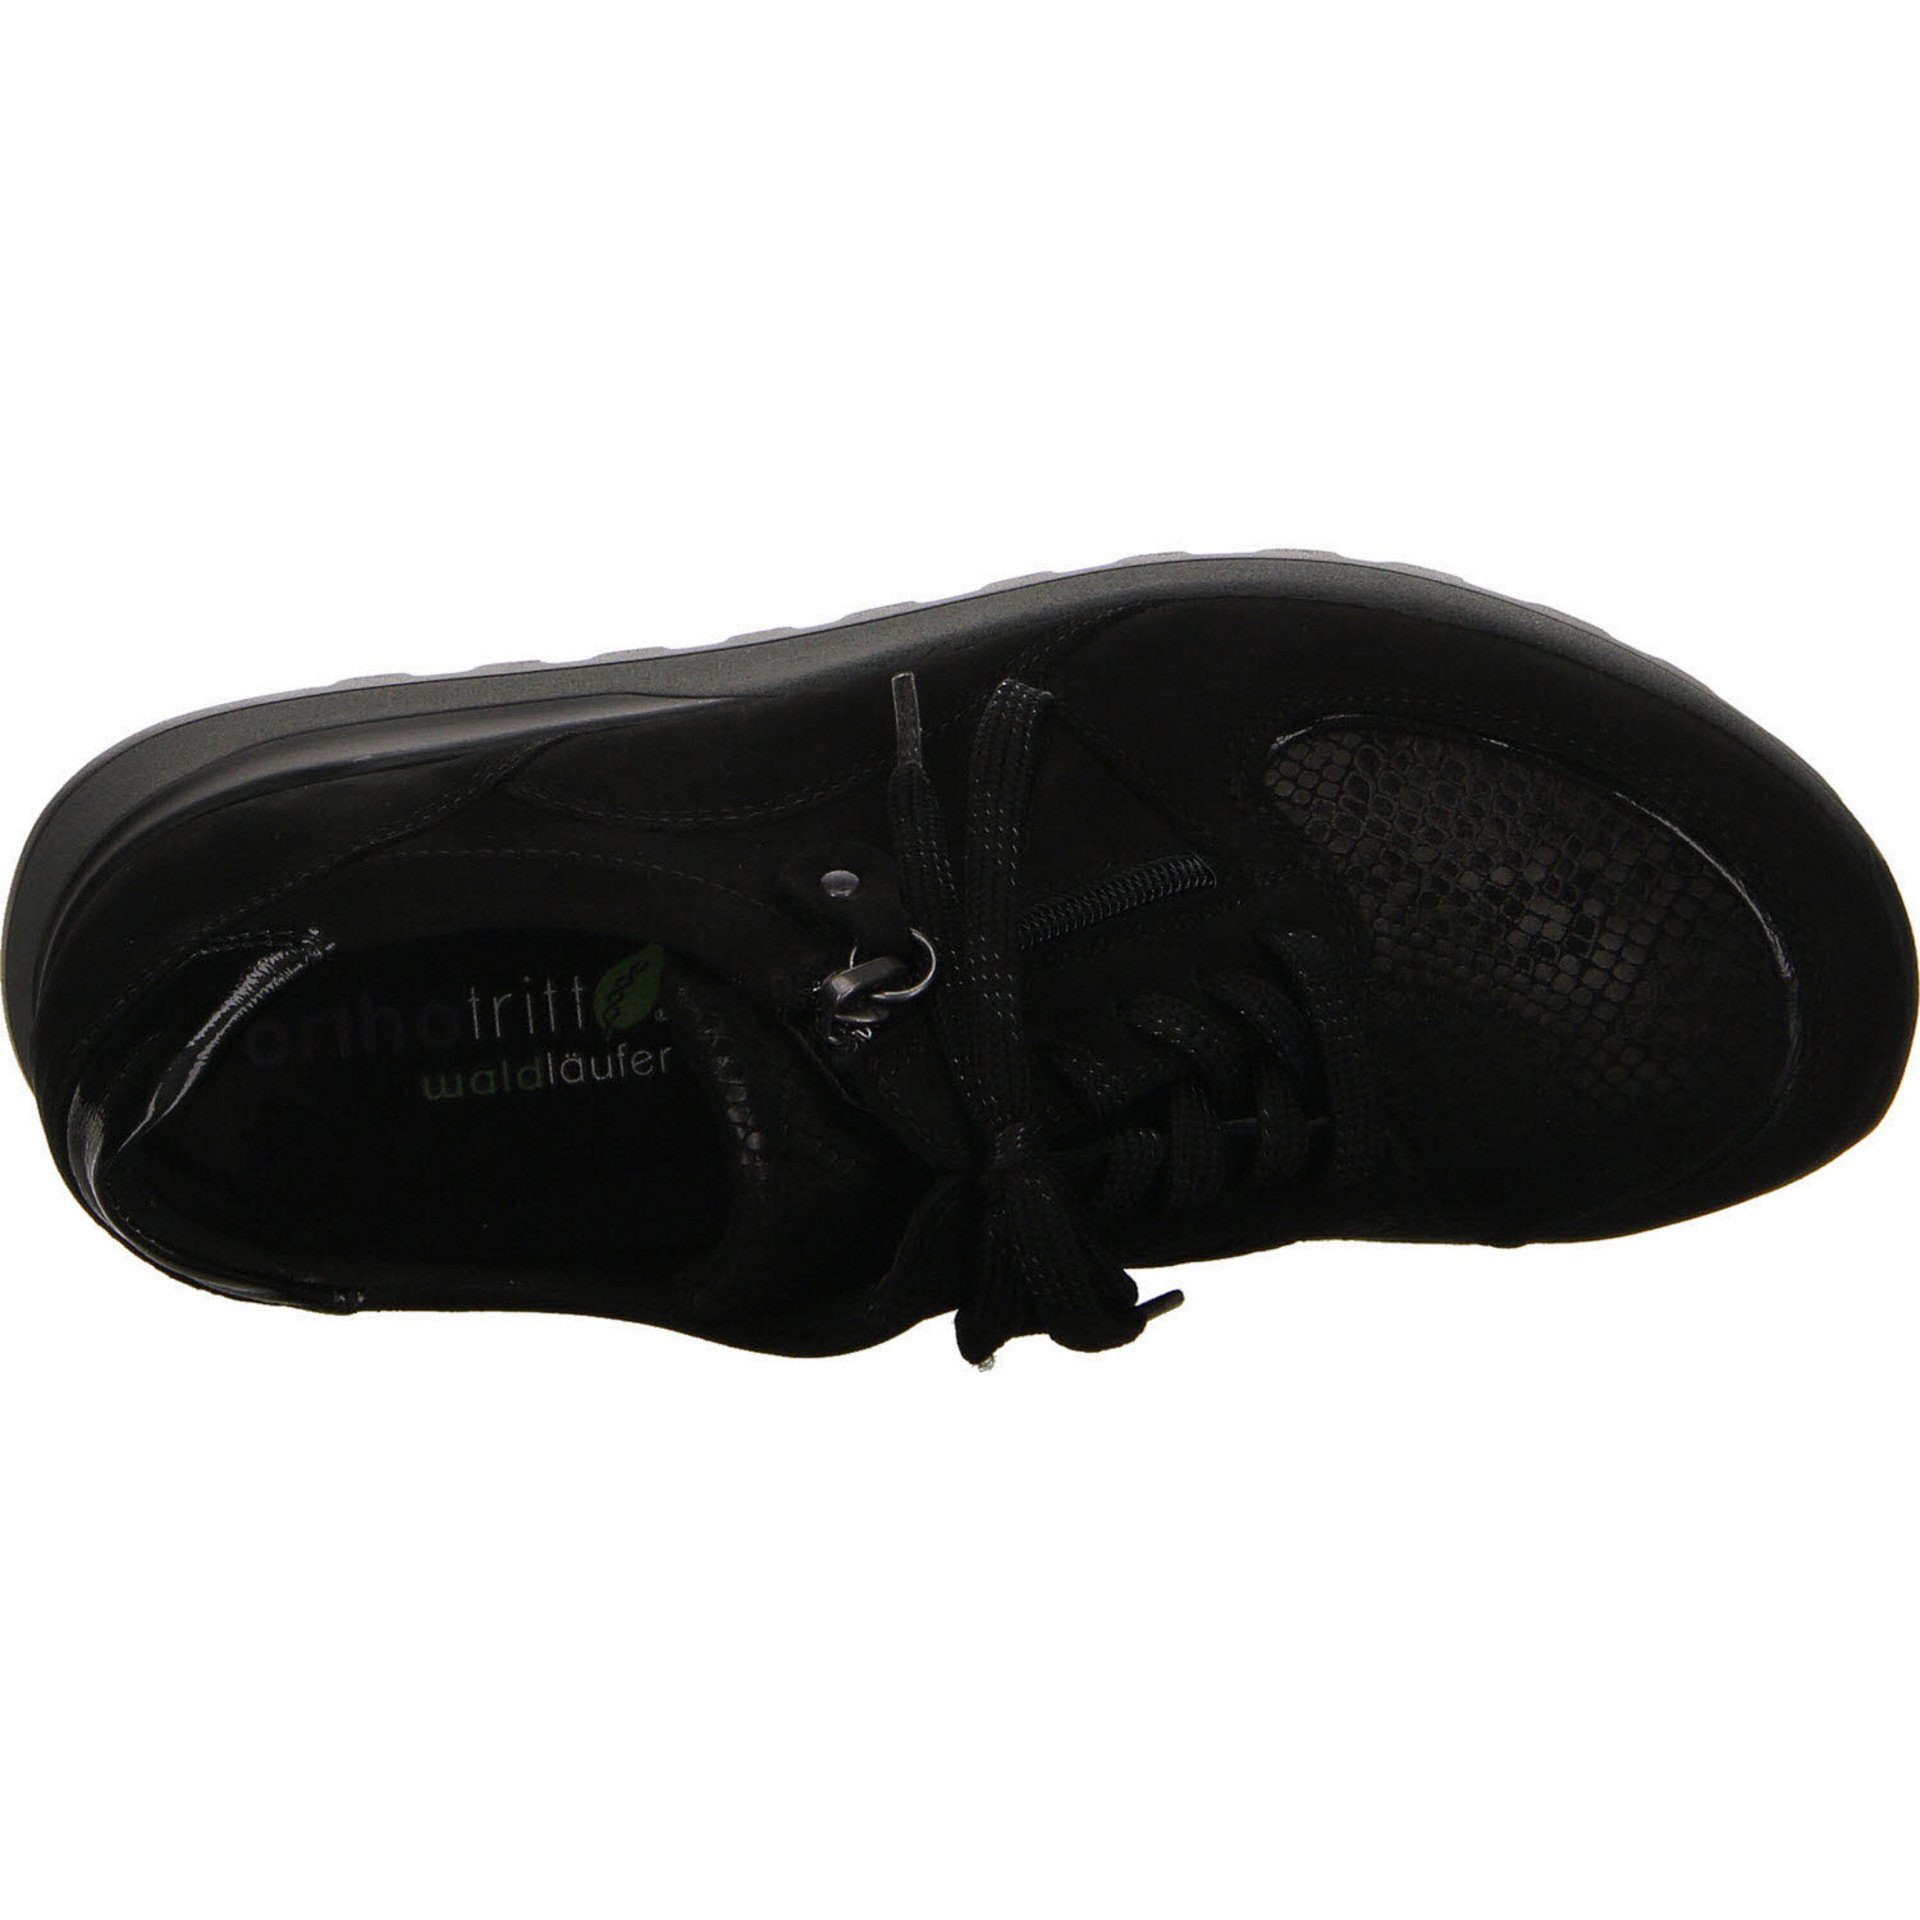 Waldläufer Lederkombination Hiroko-Soft schwarz Schnürschuh Schnürhalbschuhe Damen Sneaker